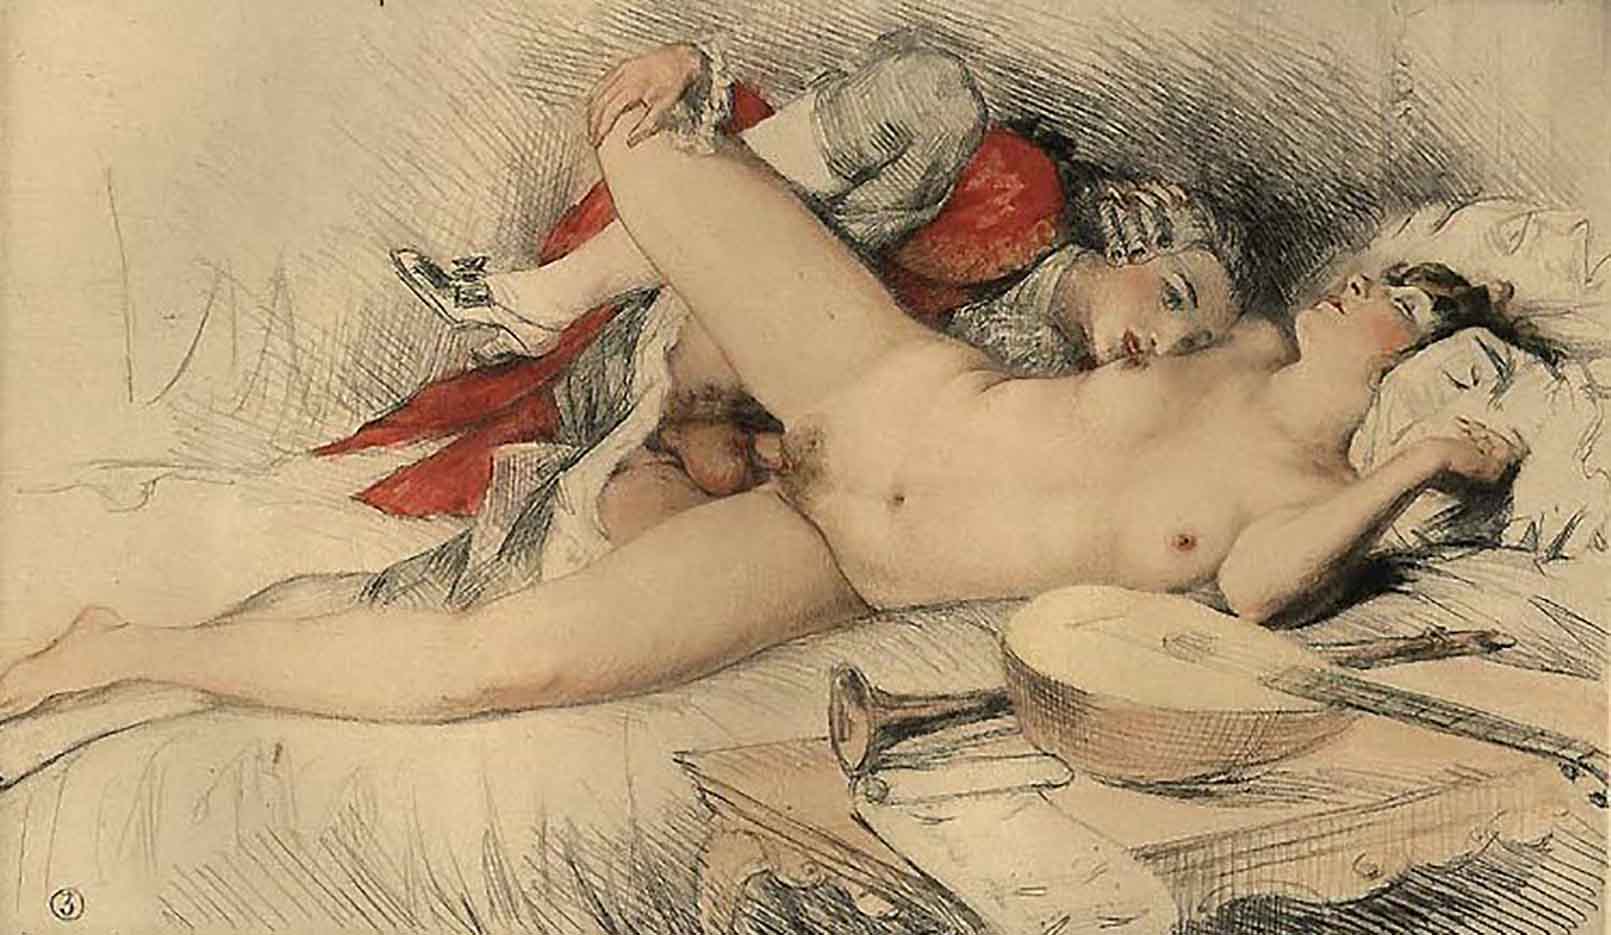 Поль-Эмиль Бека (Paul-Emile Becat) “Erotic Illustration - 3“